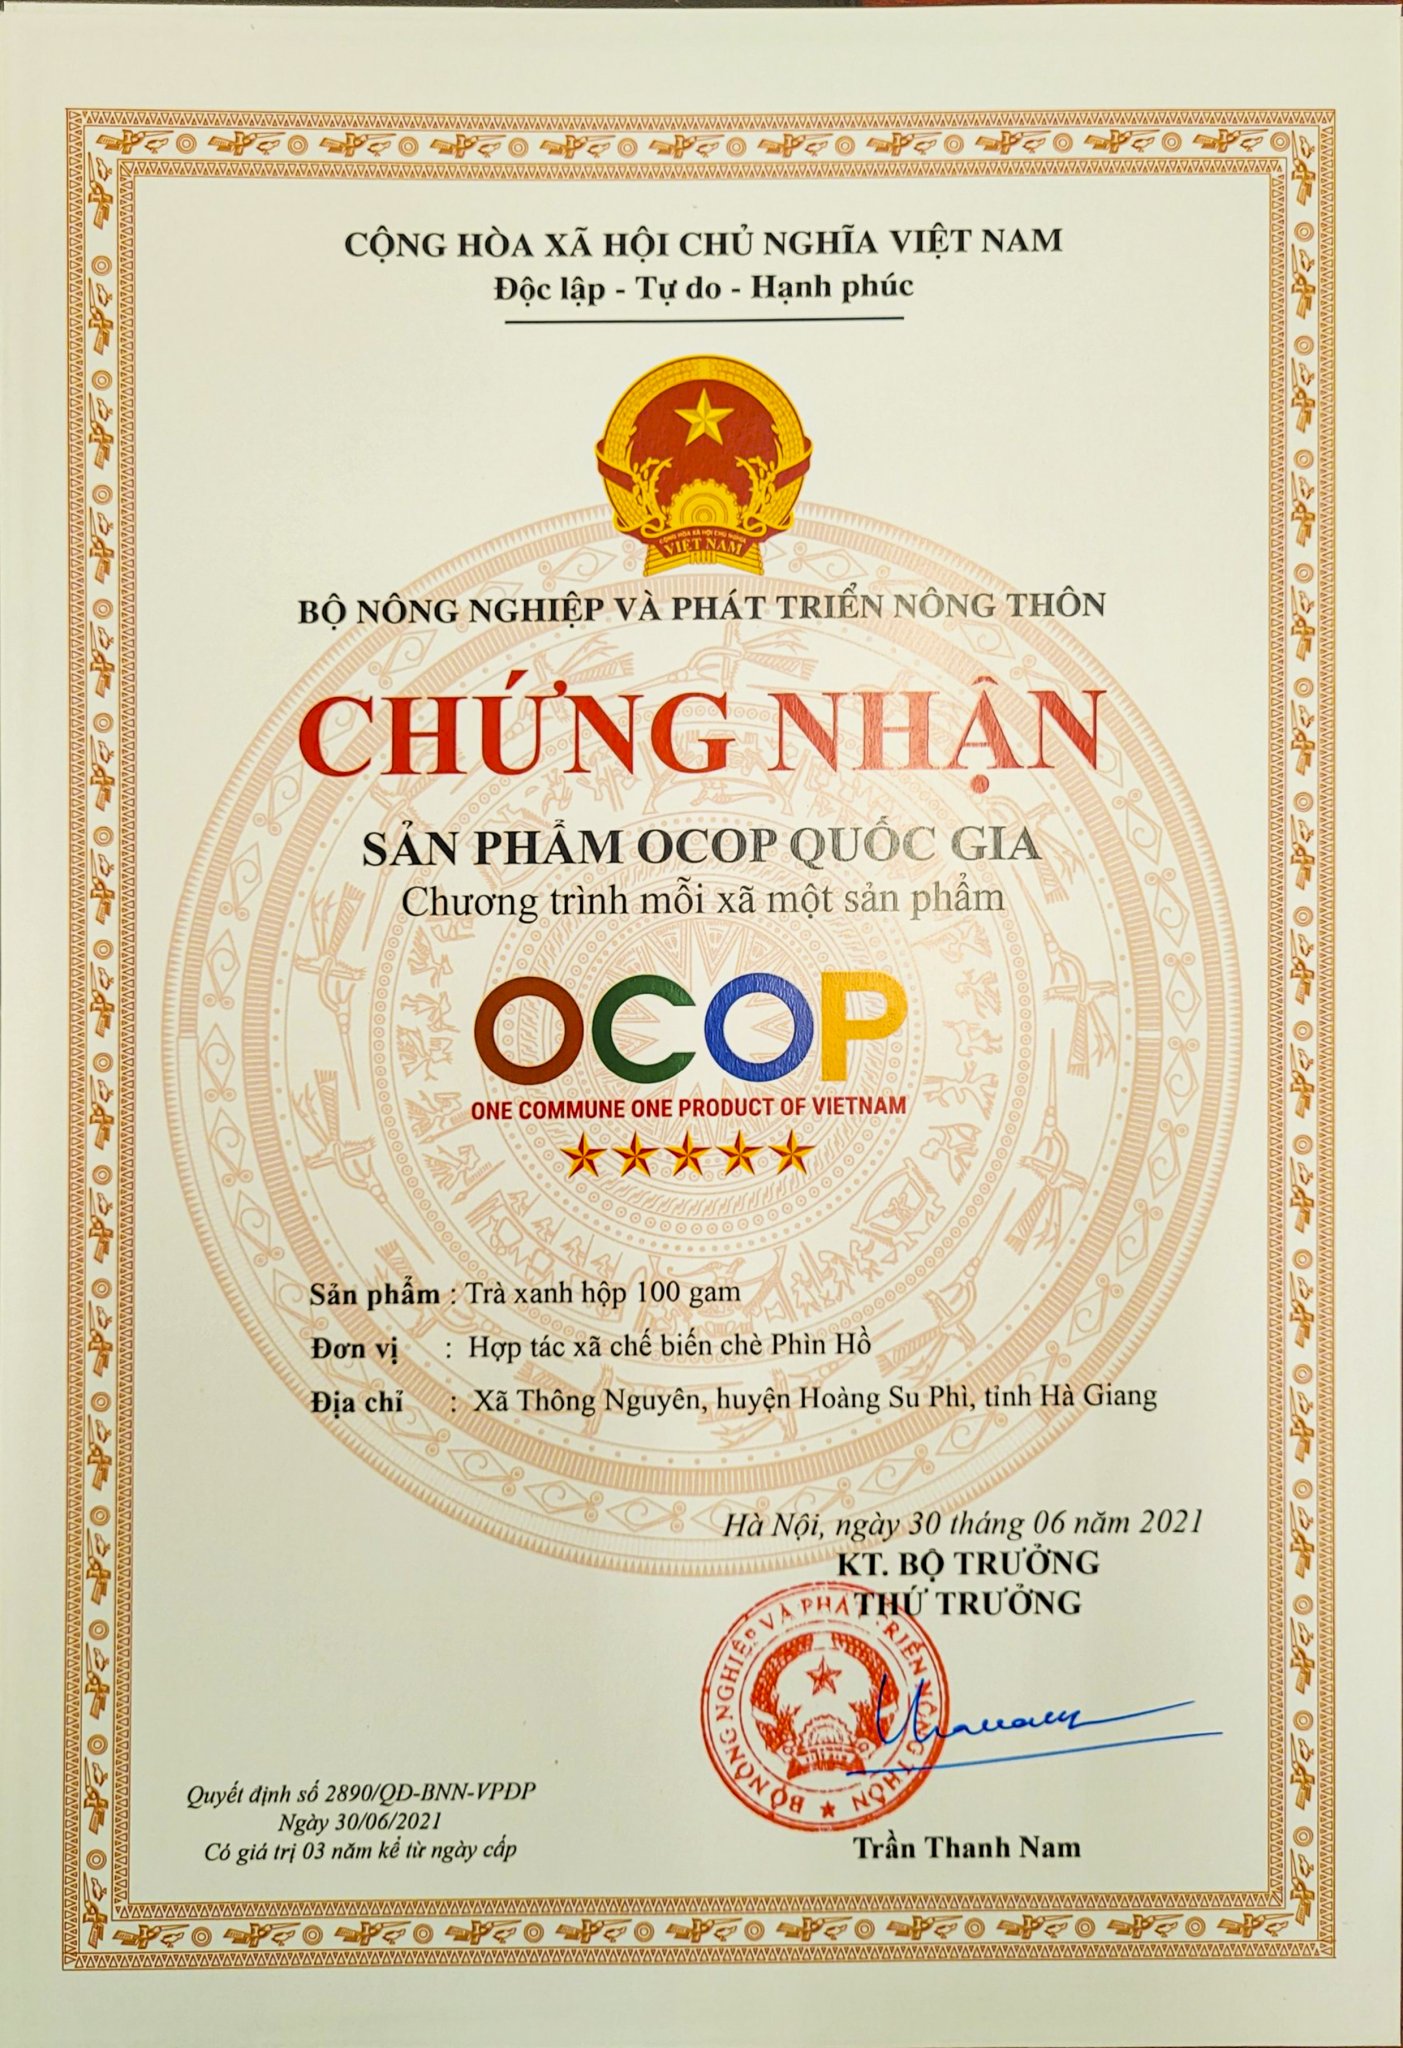 Hoàng Su Phì phát triển sản phẩm OCOP